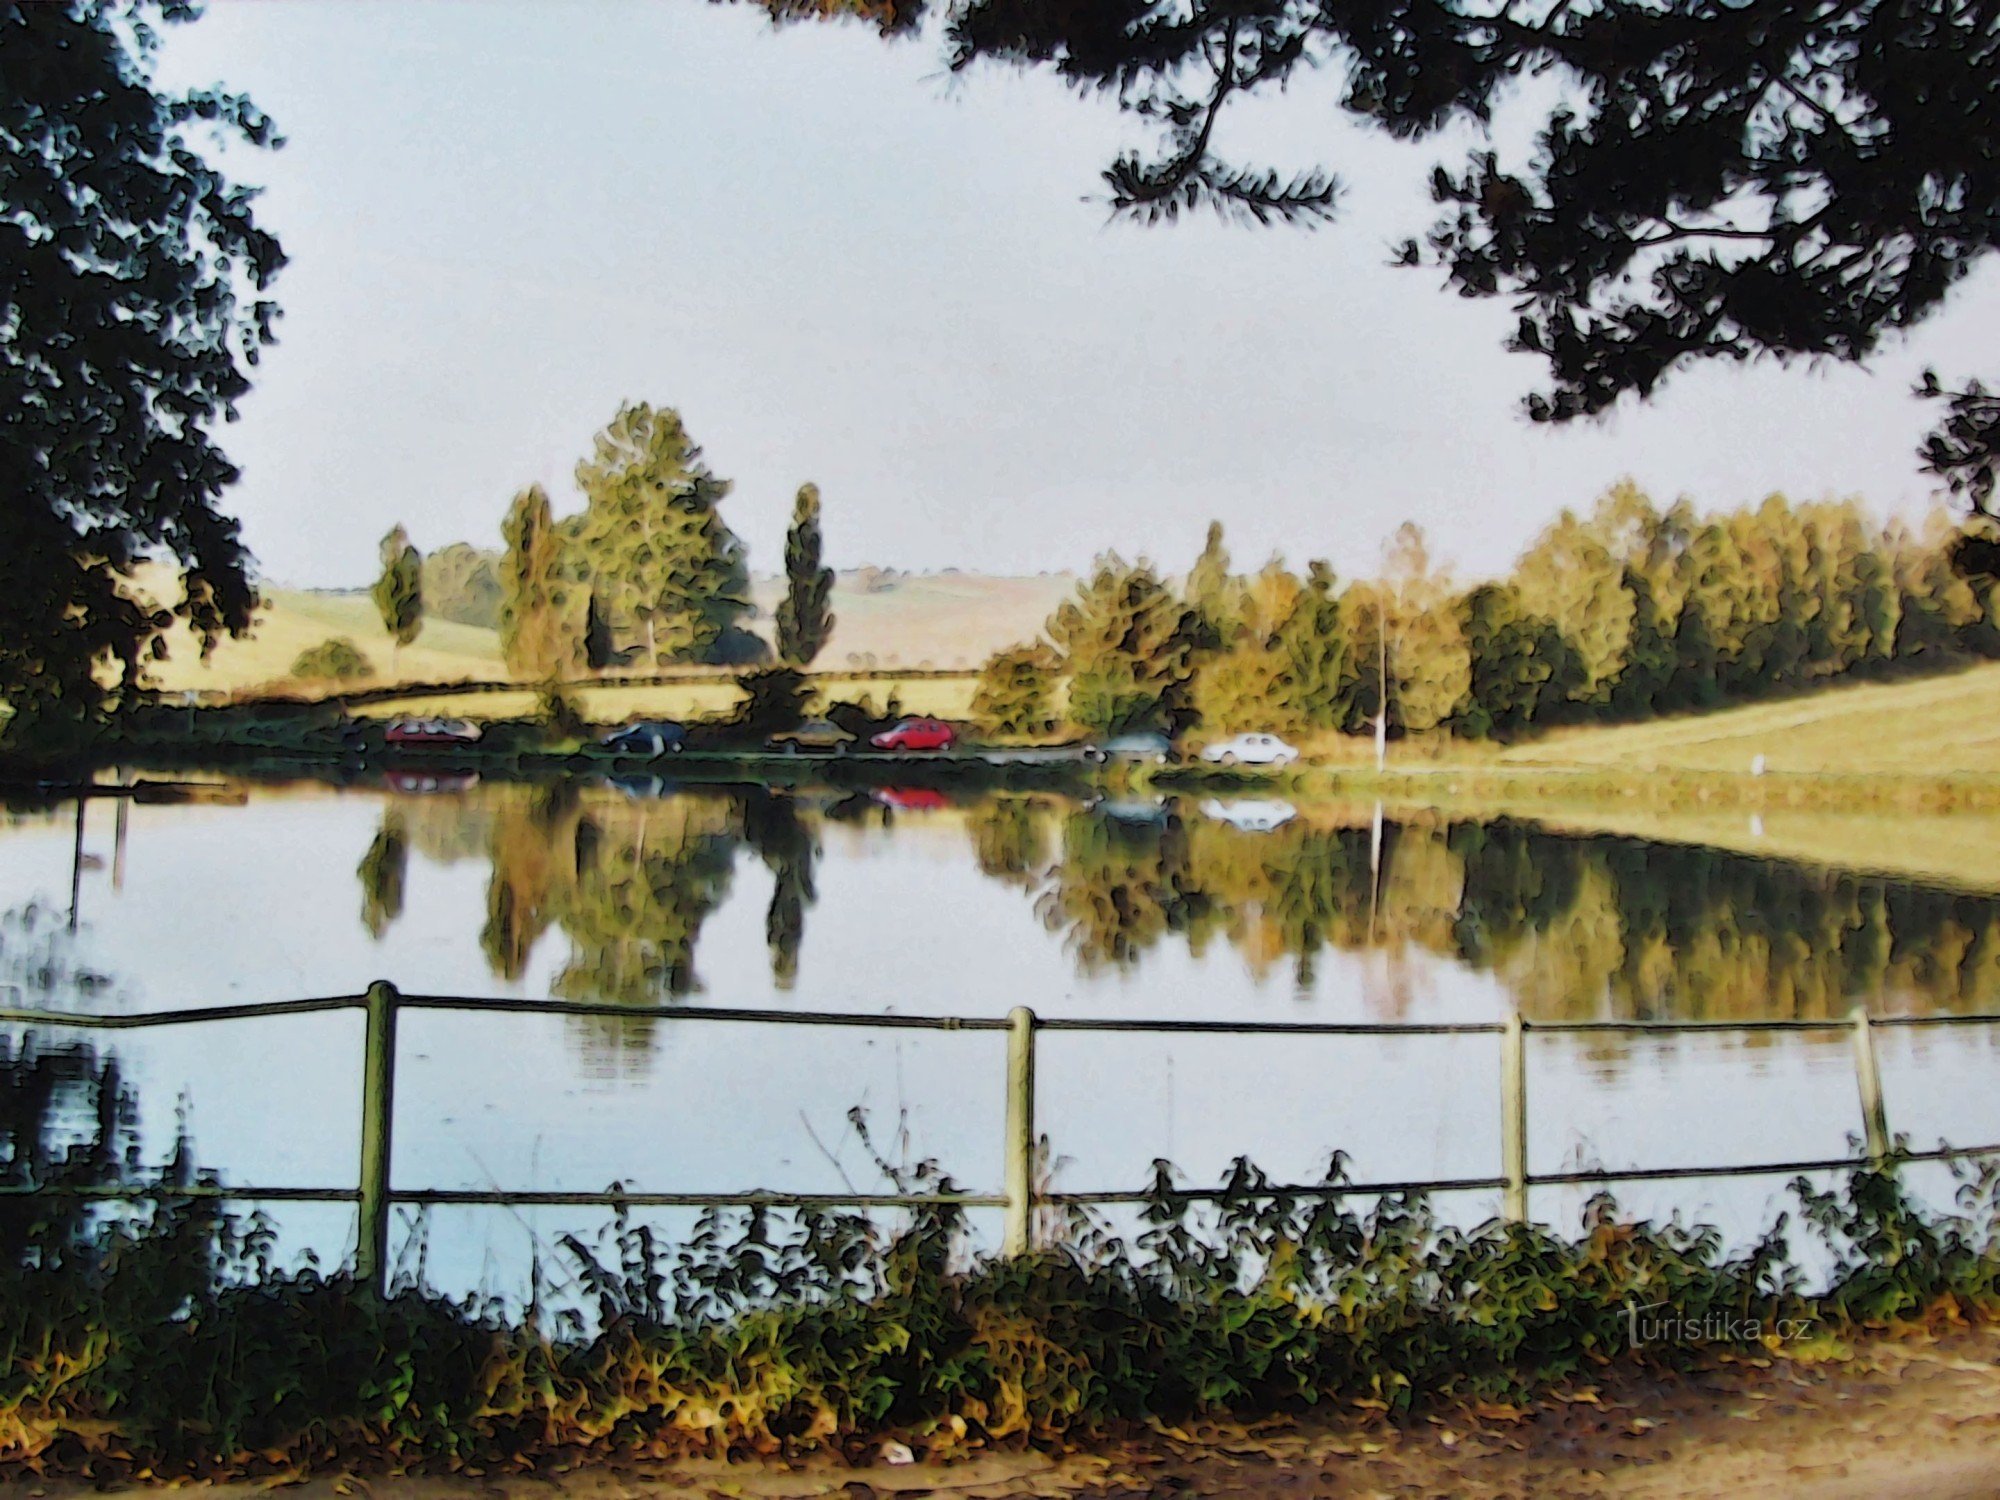 Bij dageraad in Lačnovsko - retro 2002